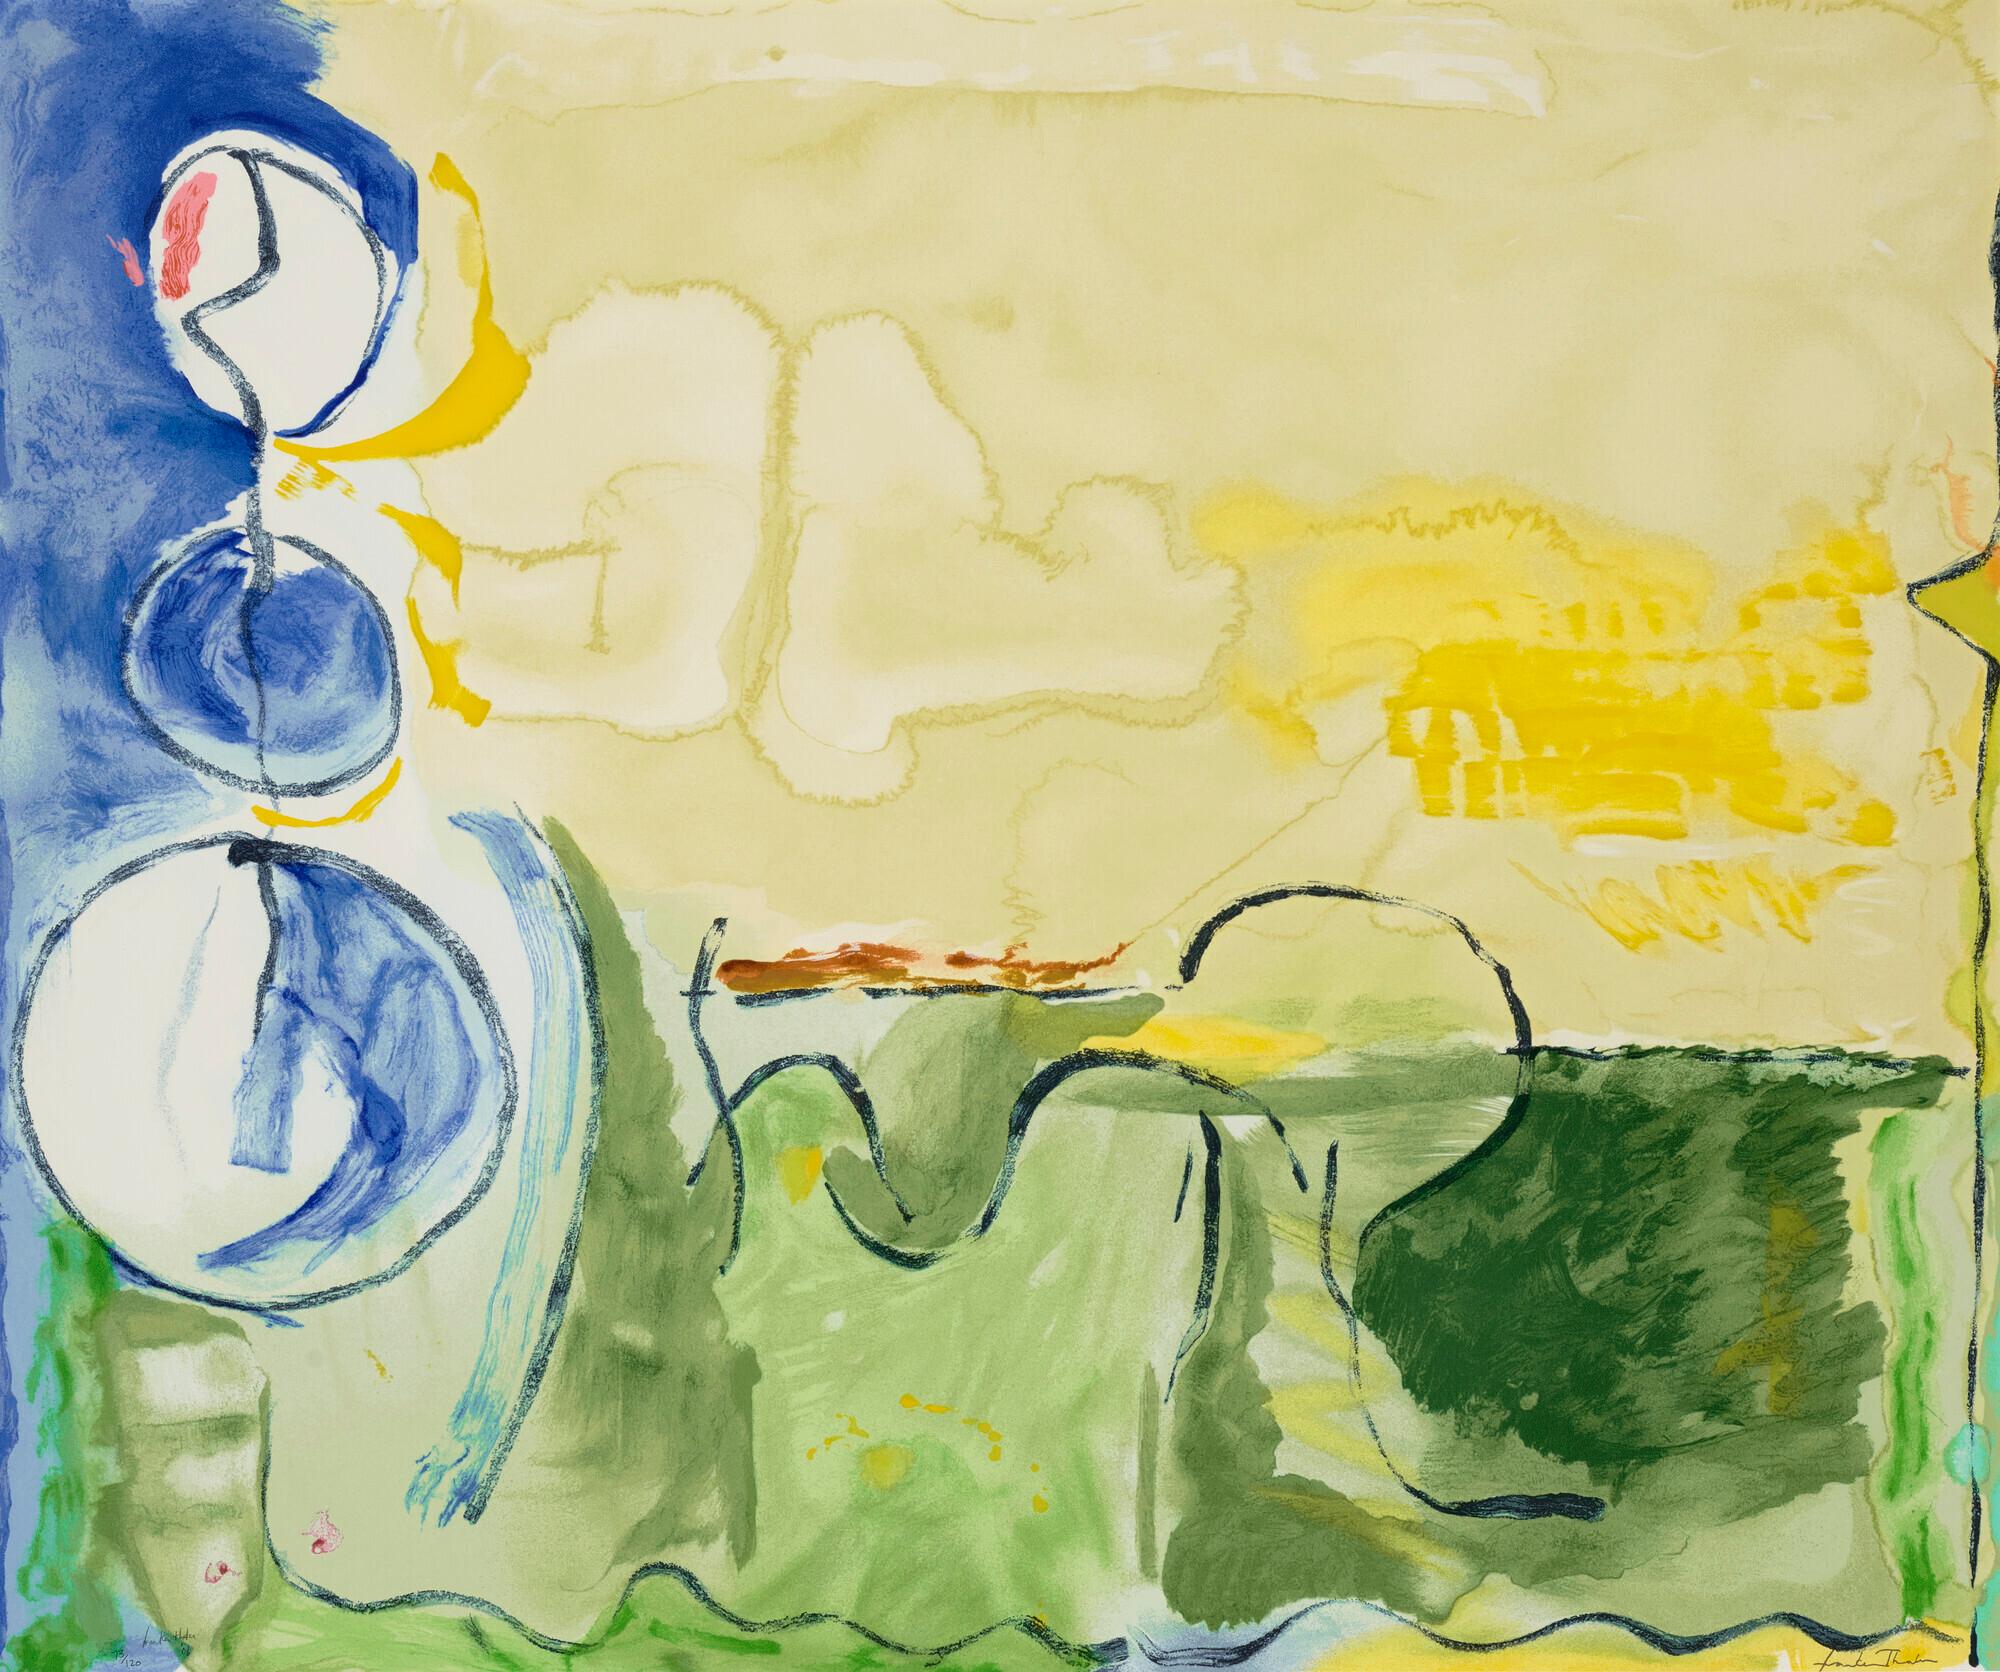 What kind of art did Helen Frankenthaler do?